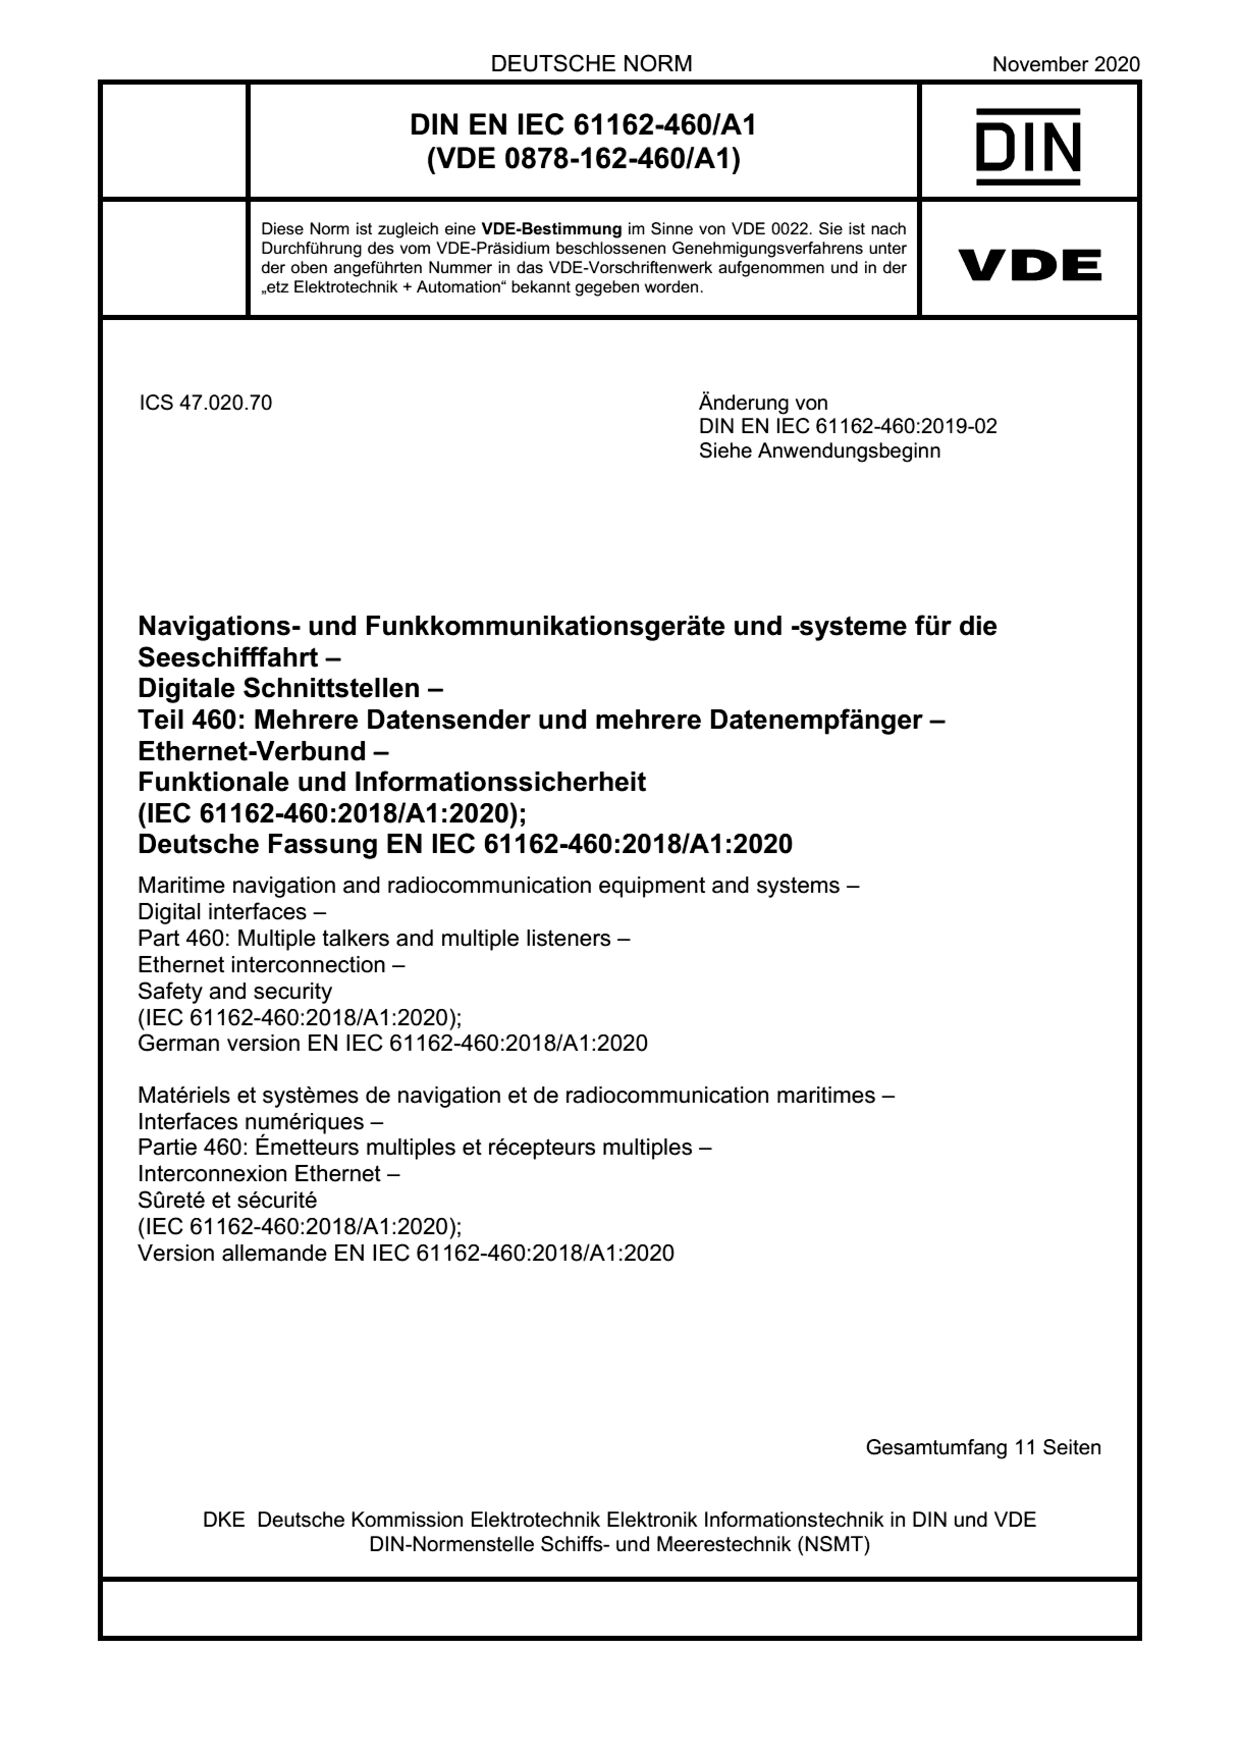 DIN EN IEC 61162-460/A1:2020